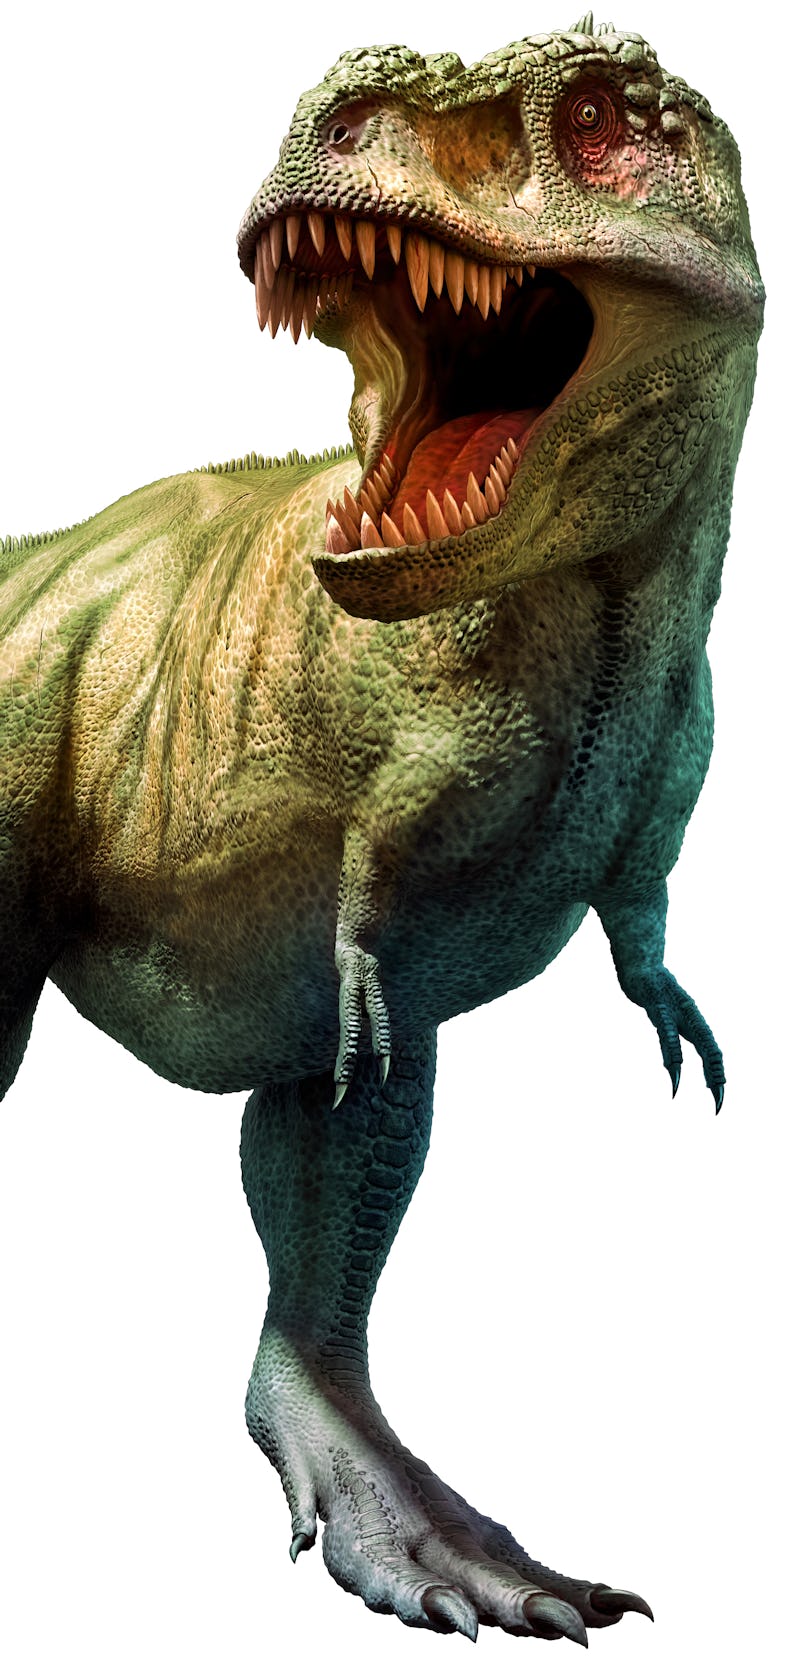 Tyrannosaurus rex dinosaur from the Cretaceous era 3D illustration
